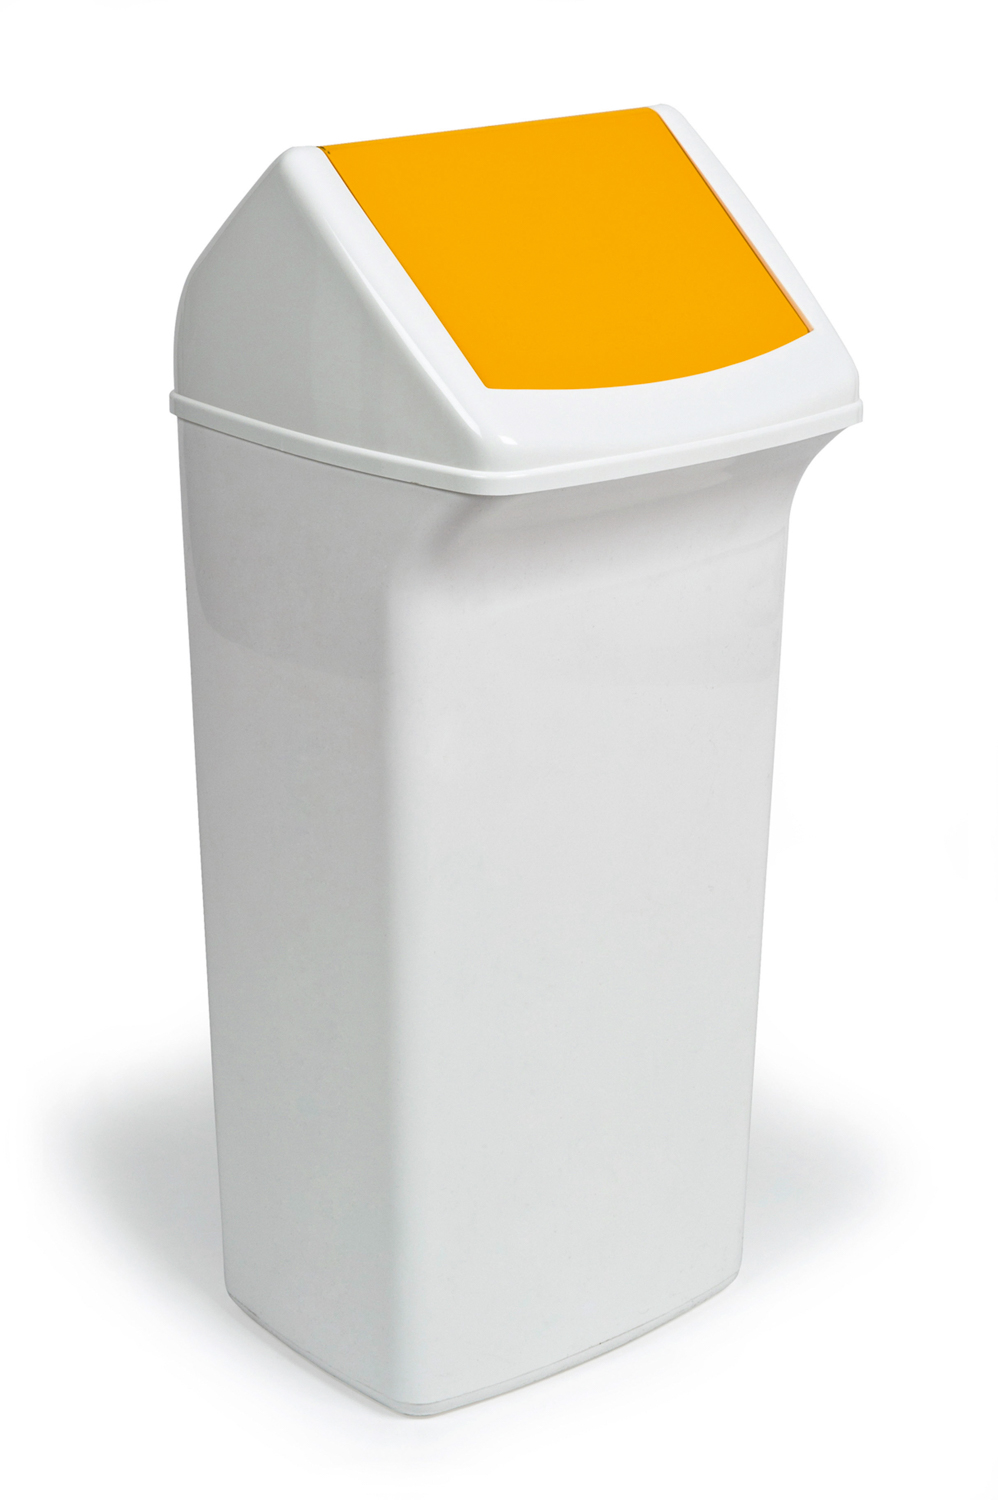 Durable Abfallbehälter mit Schwingdeckel in gelb. Kapazität: 40 L Maße: 330 x 760 x 360 mm (B x H x T)